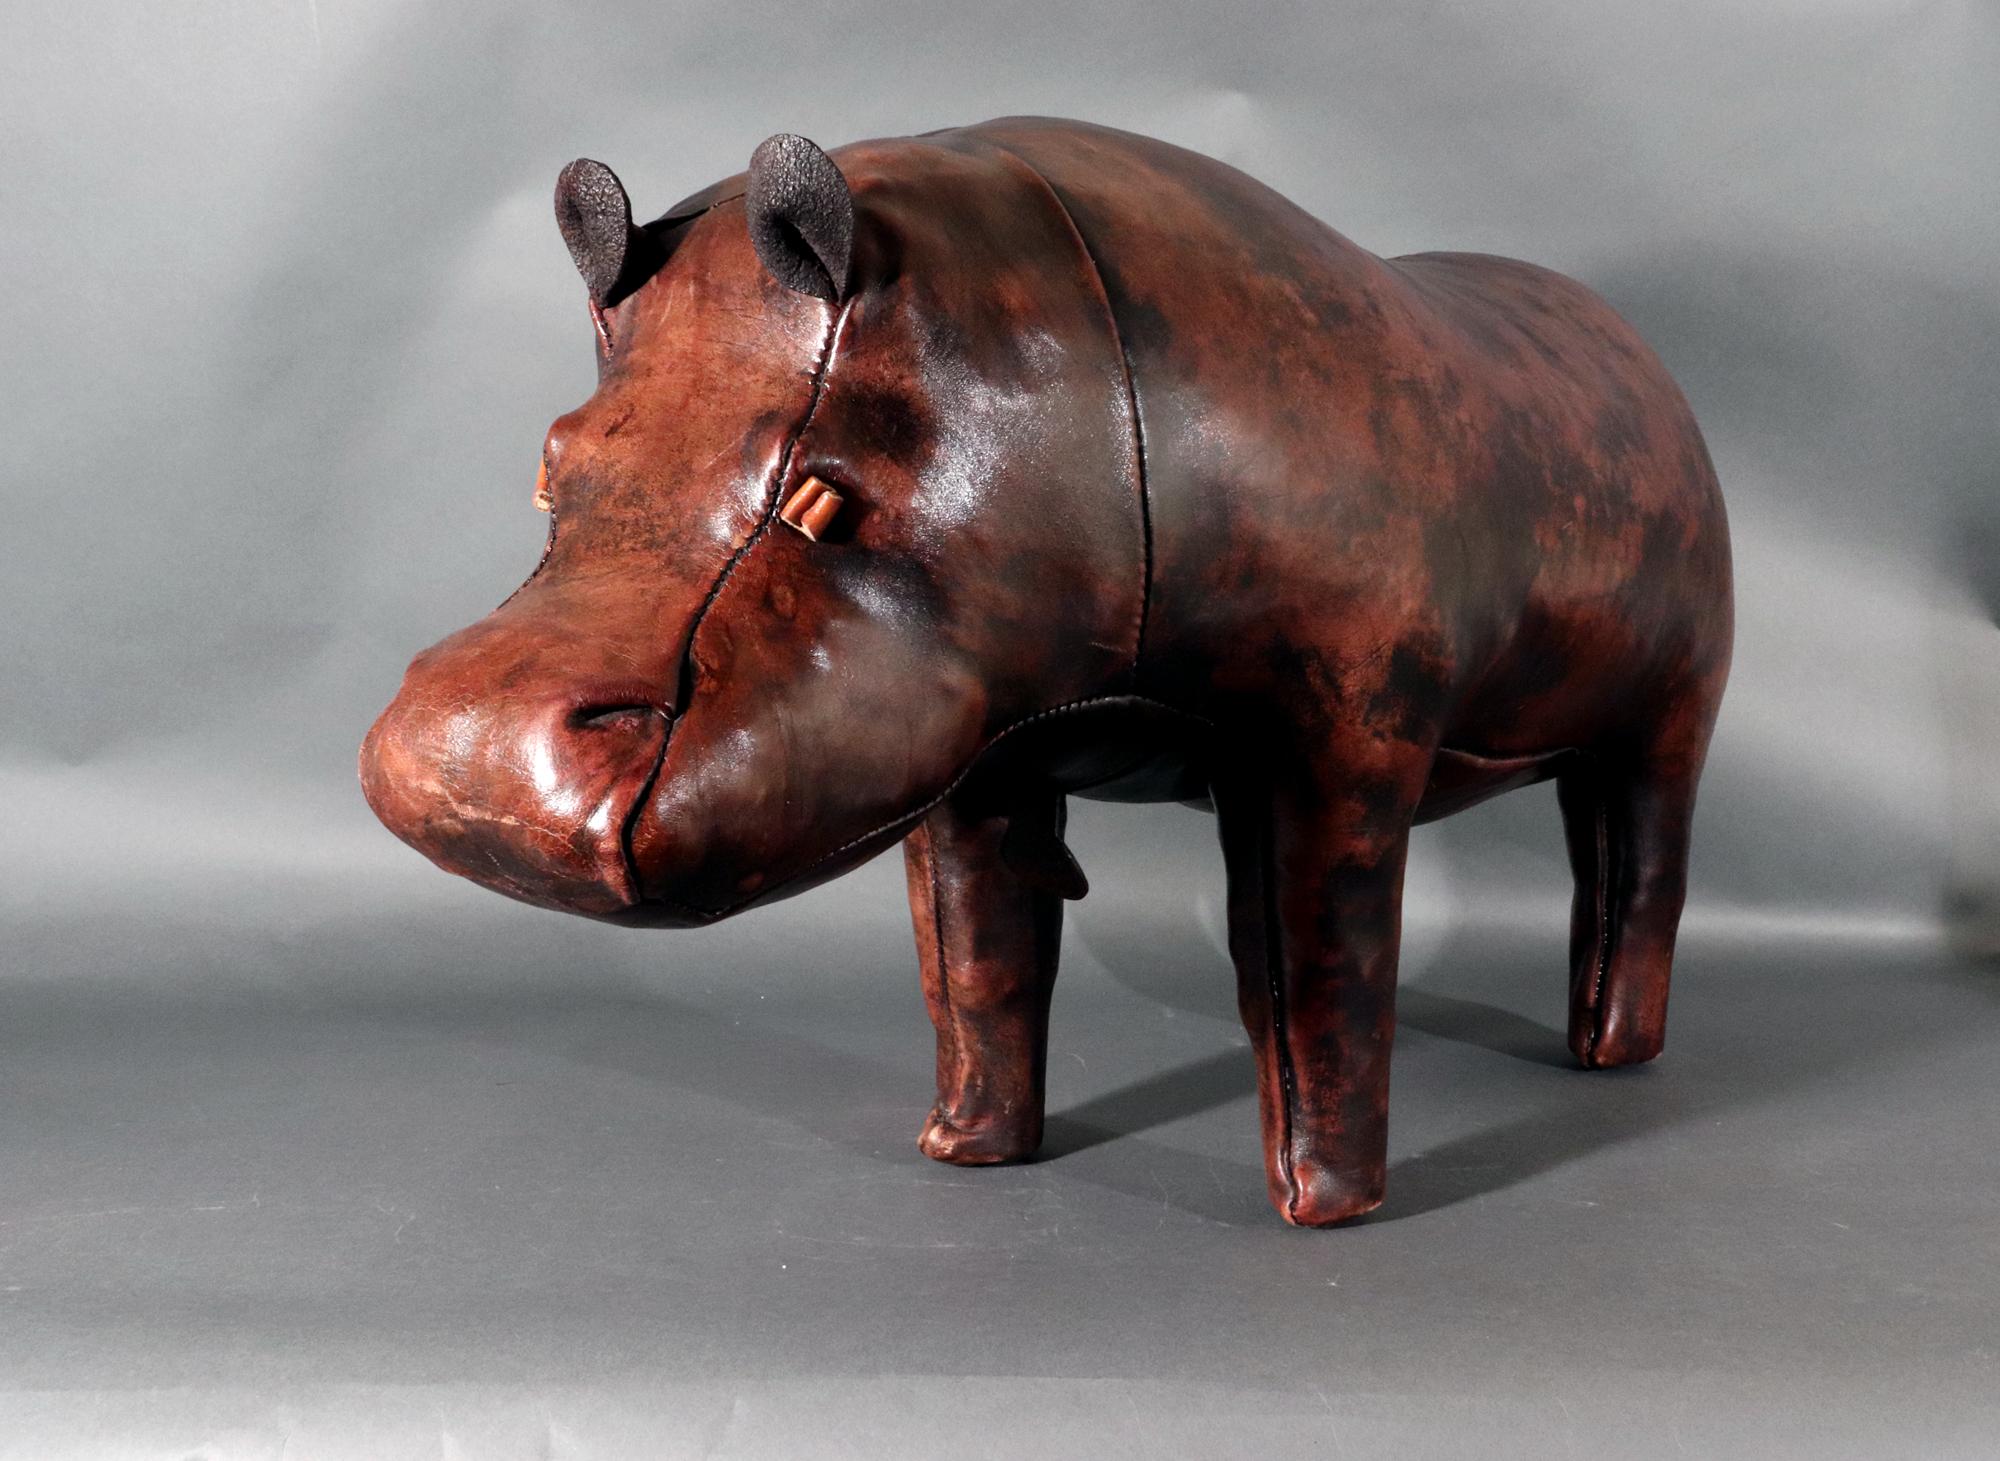 Tabouret en cuir vintage Hippopotamus,
Après Dimitri Omersa,
Jancraft,
Années 1960-70

Le pouf ou ottoman en cuir est conçu en forme d'hippopotame dans un beau cuir.    L'hippopotame est si expressif avec ses yeux, ses petites oreilles et sa queue. 